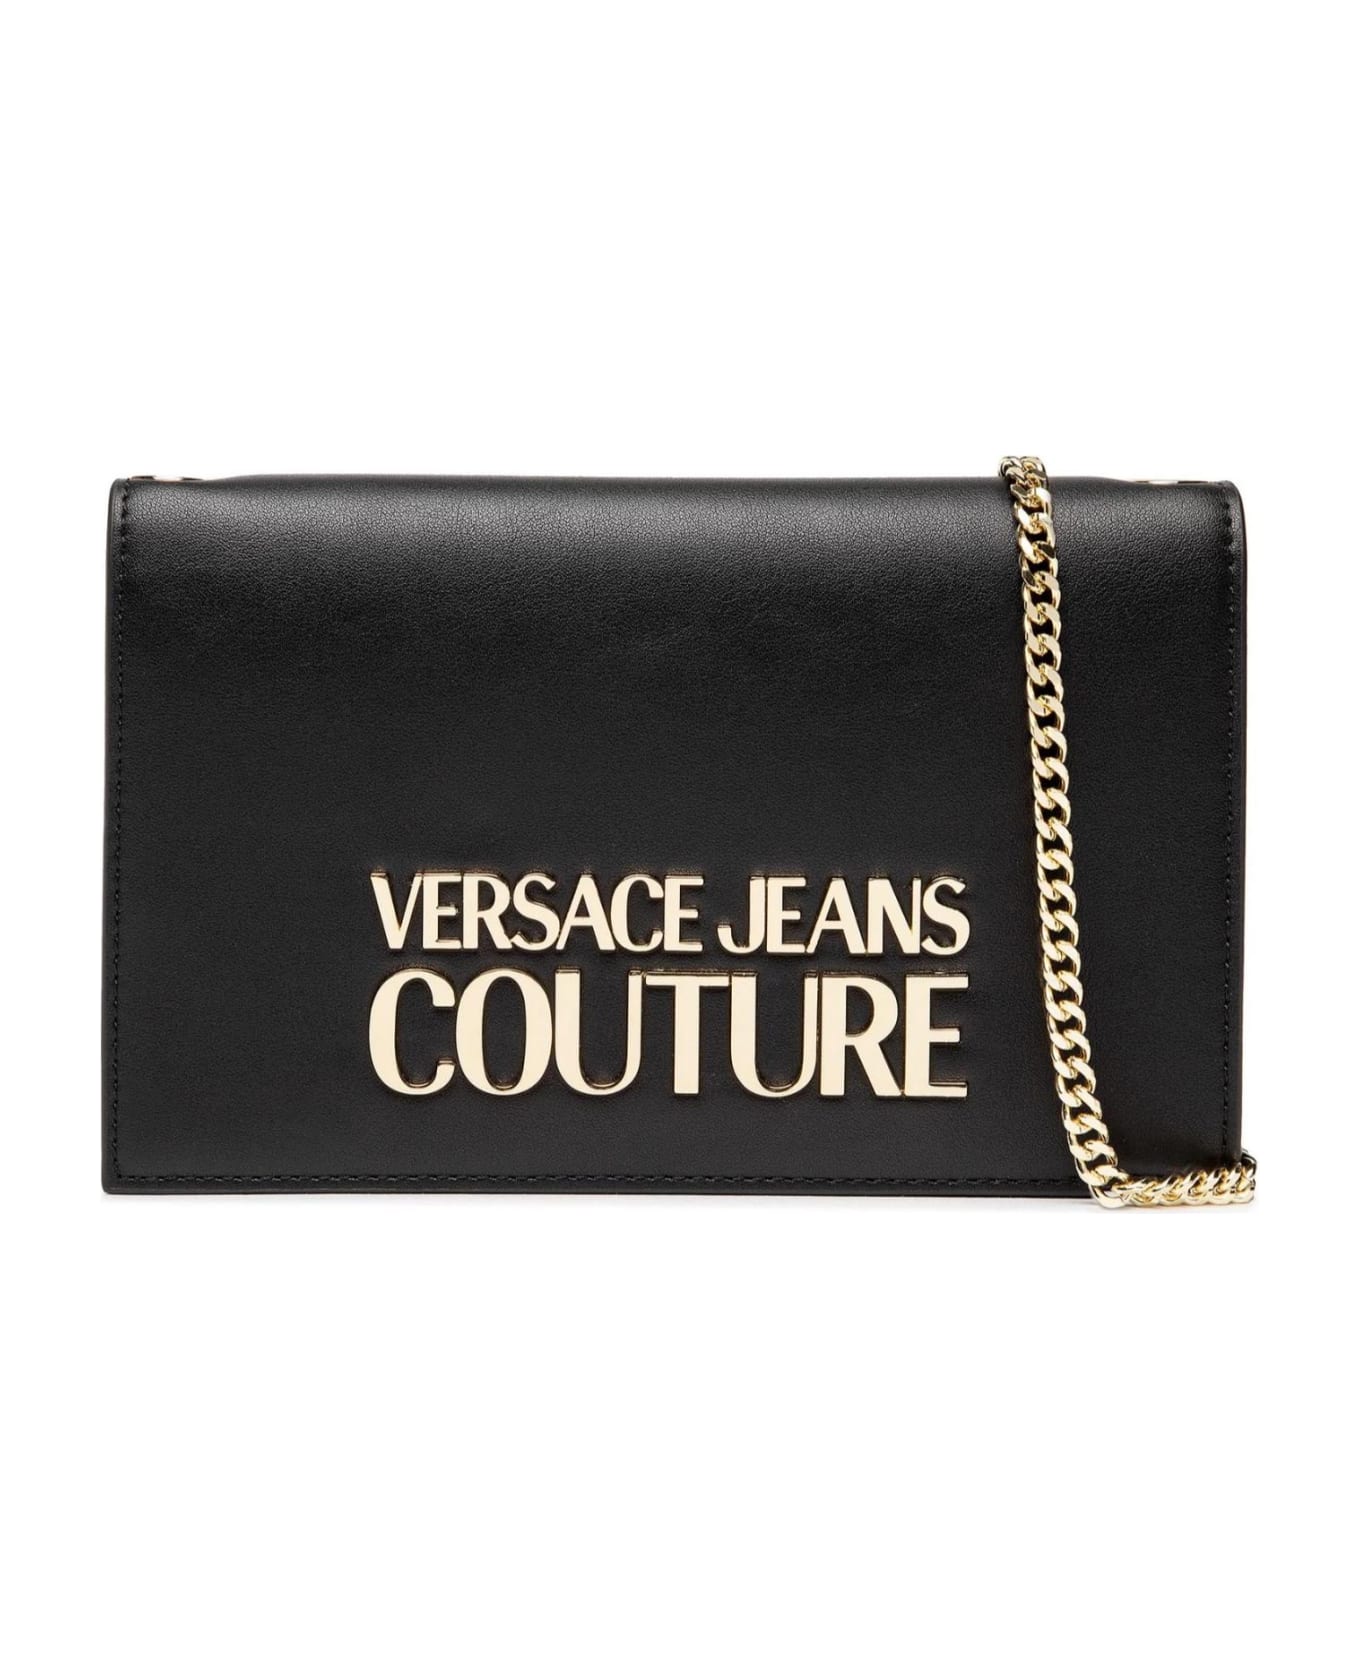 Versace Jeans Couture Wallets Black - Black